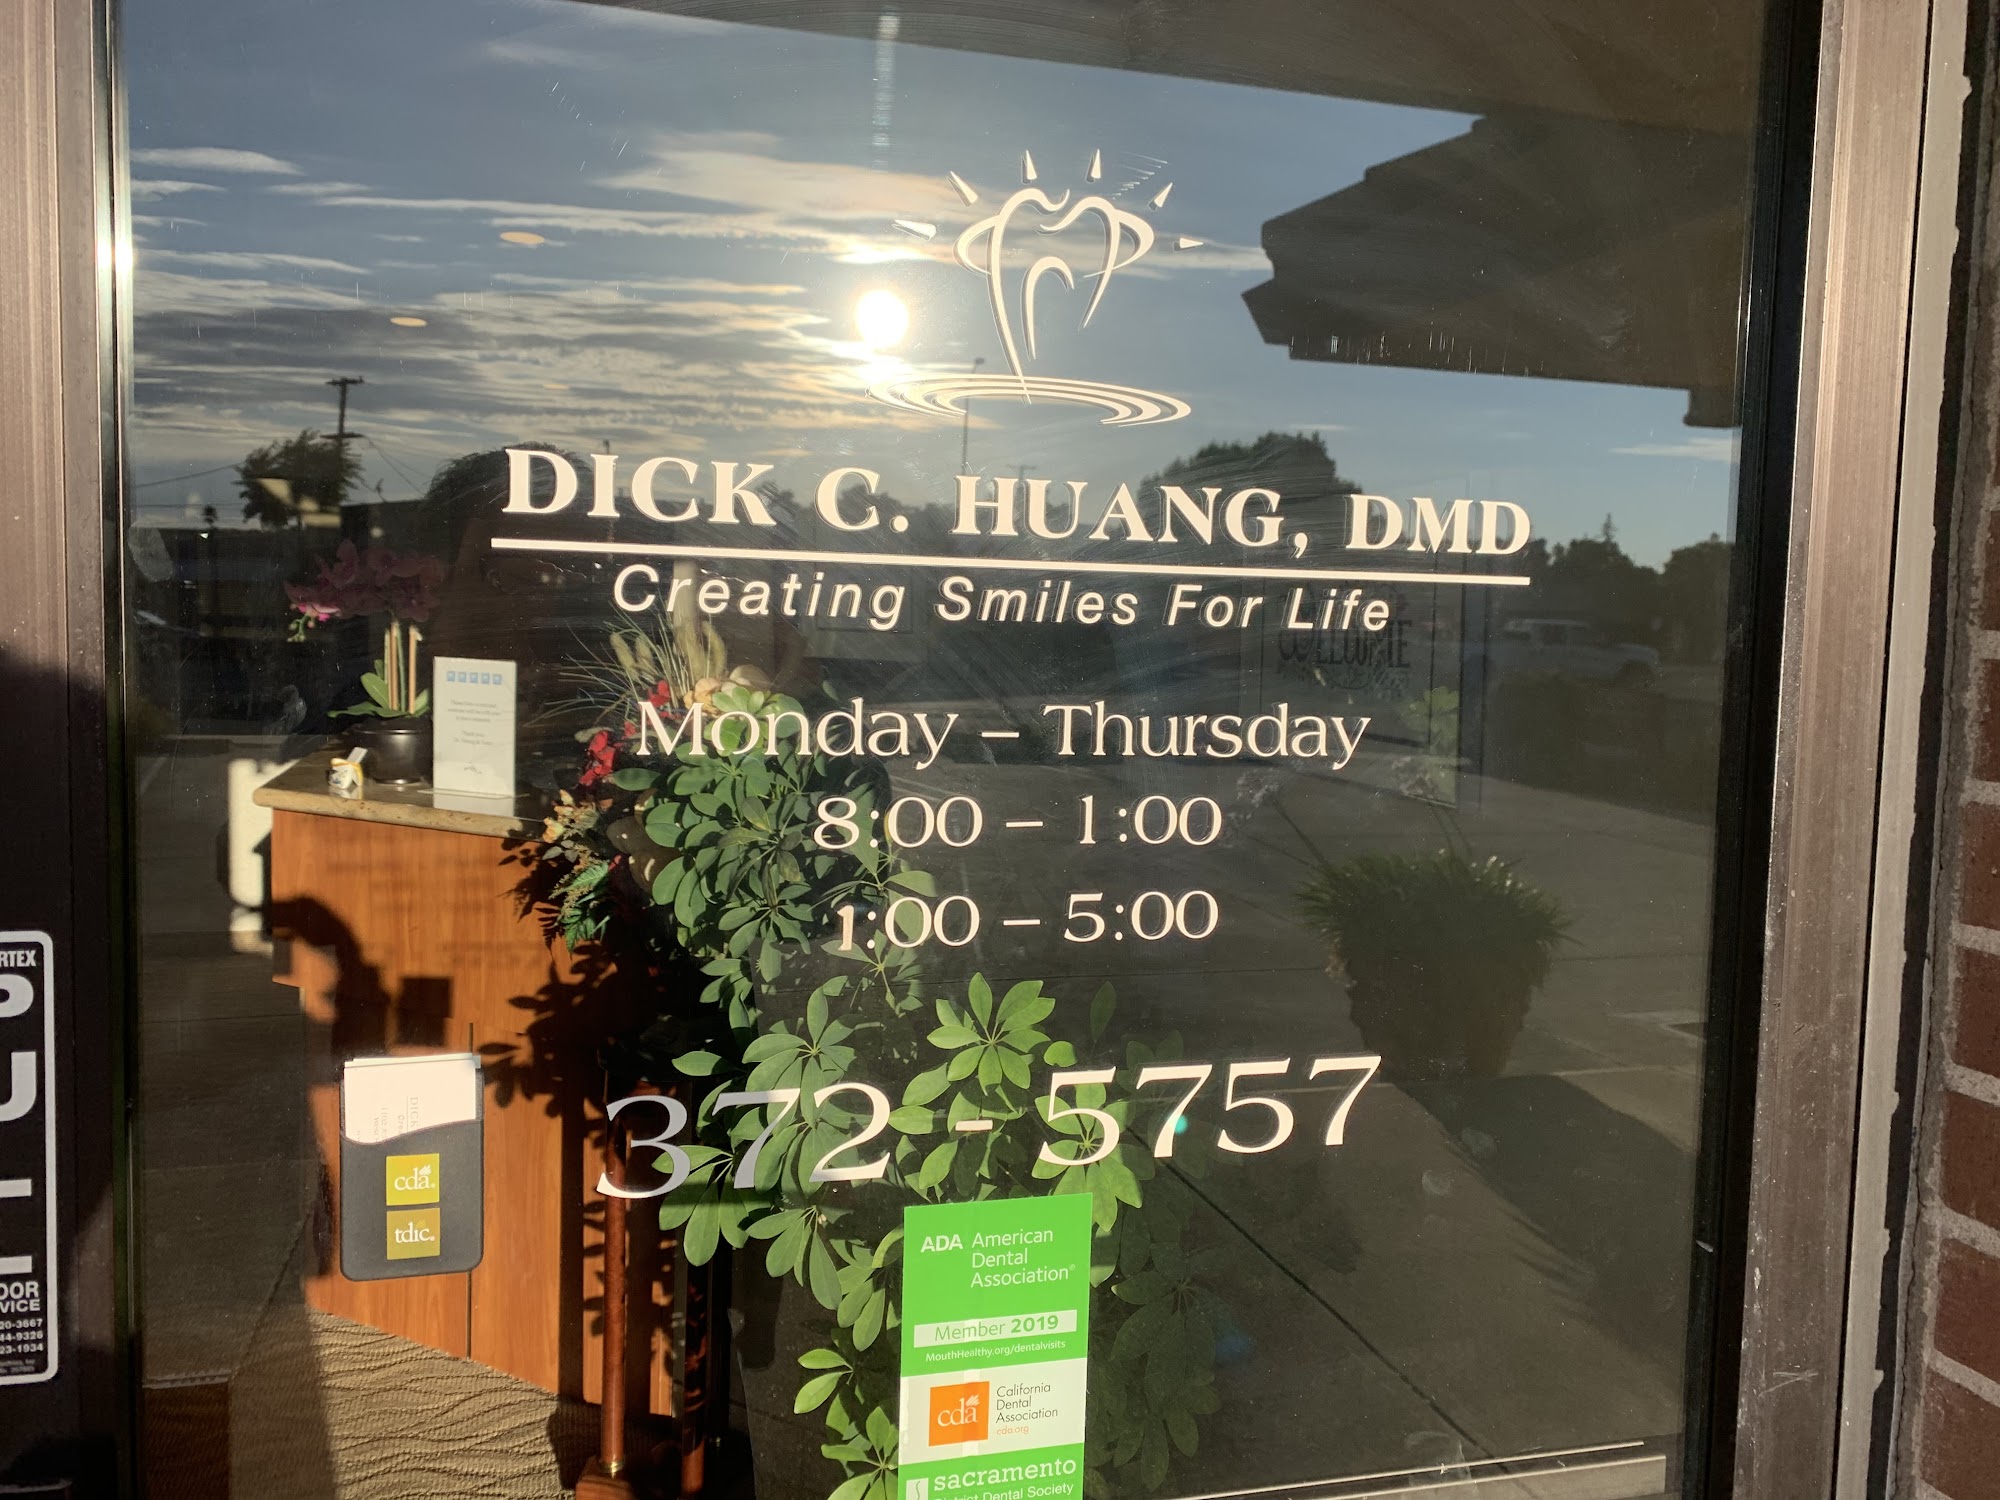 Dr. Dick C. Huang, DMD